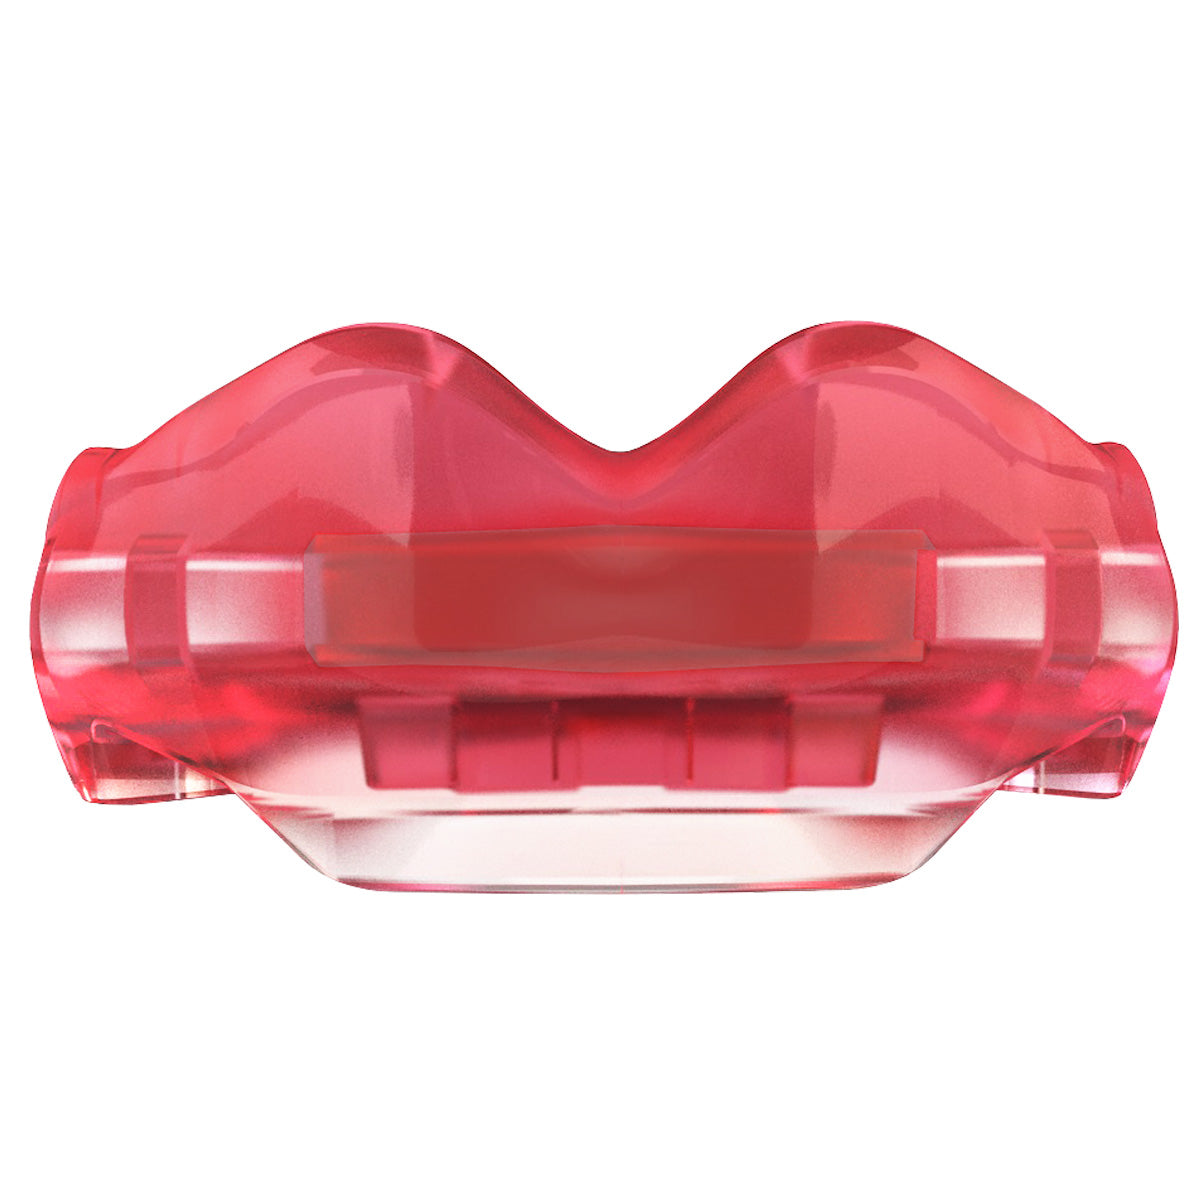 SAFEJAWZ Ortho Series Selbstanpassender Mundschutz für Zahnspangen - rosa